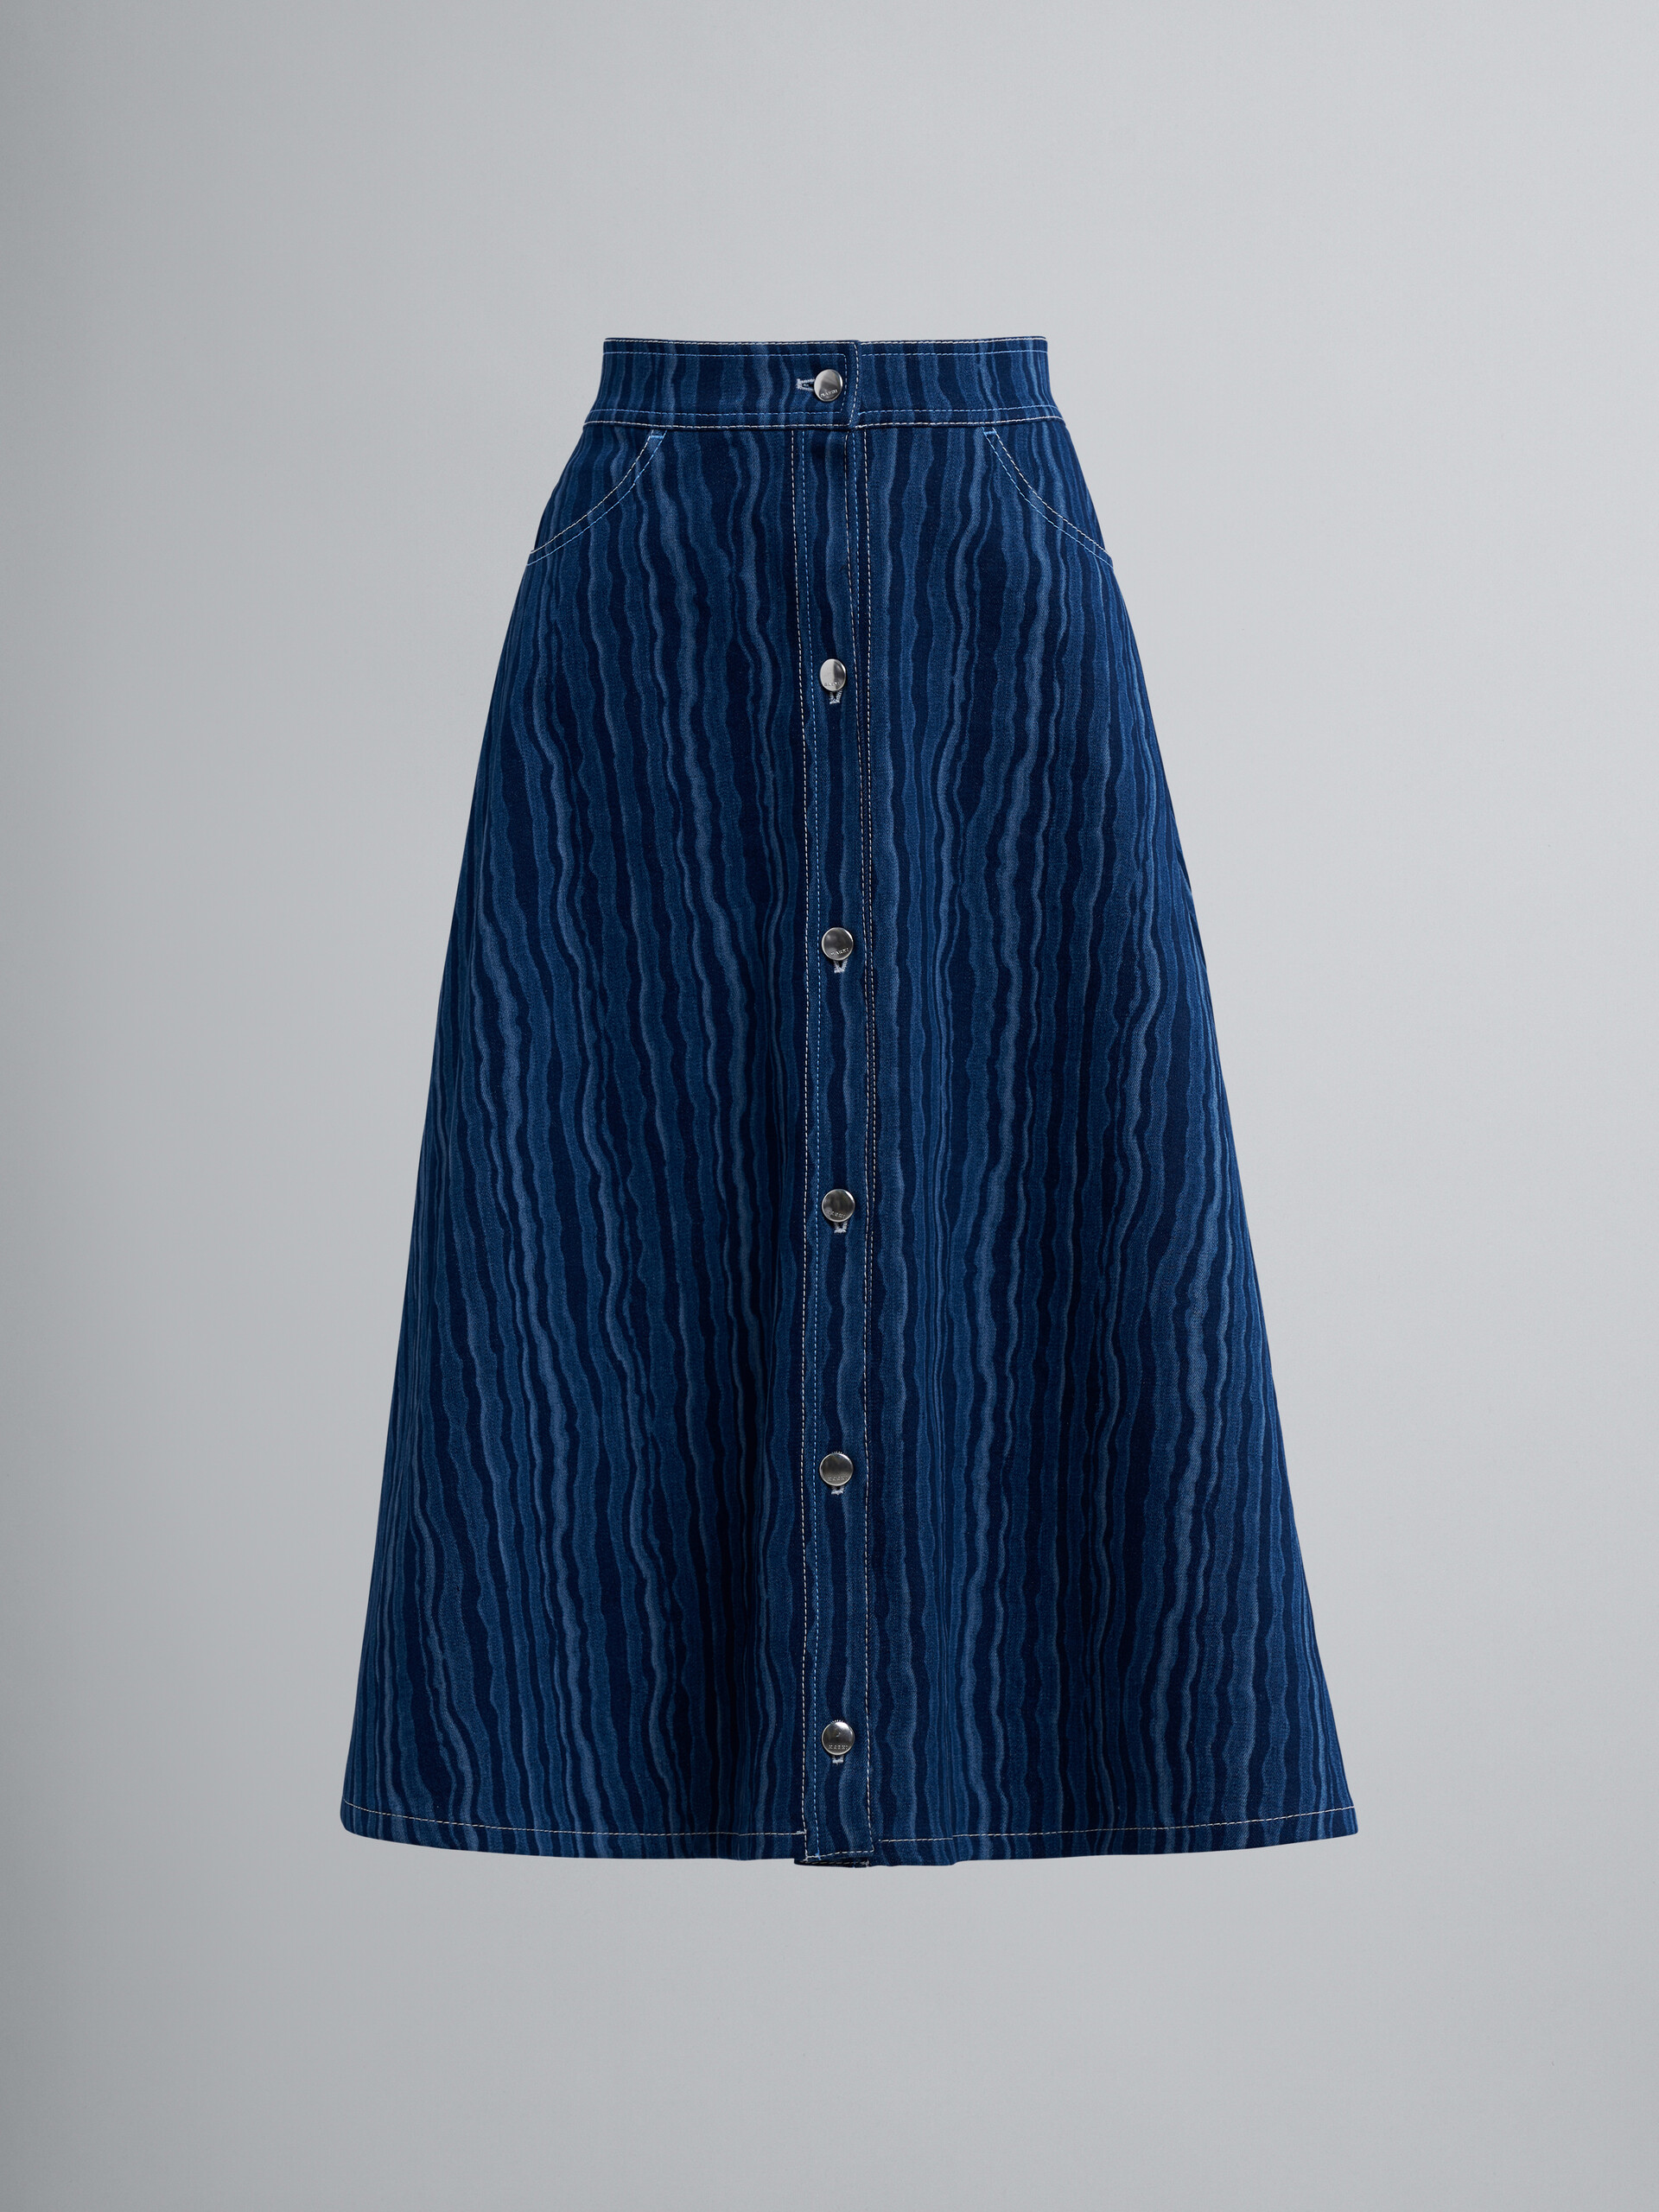 Degradé denim skirt - Skirts - Image 1